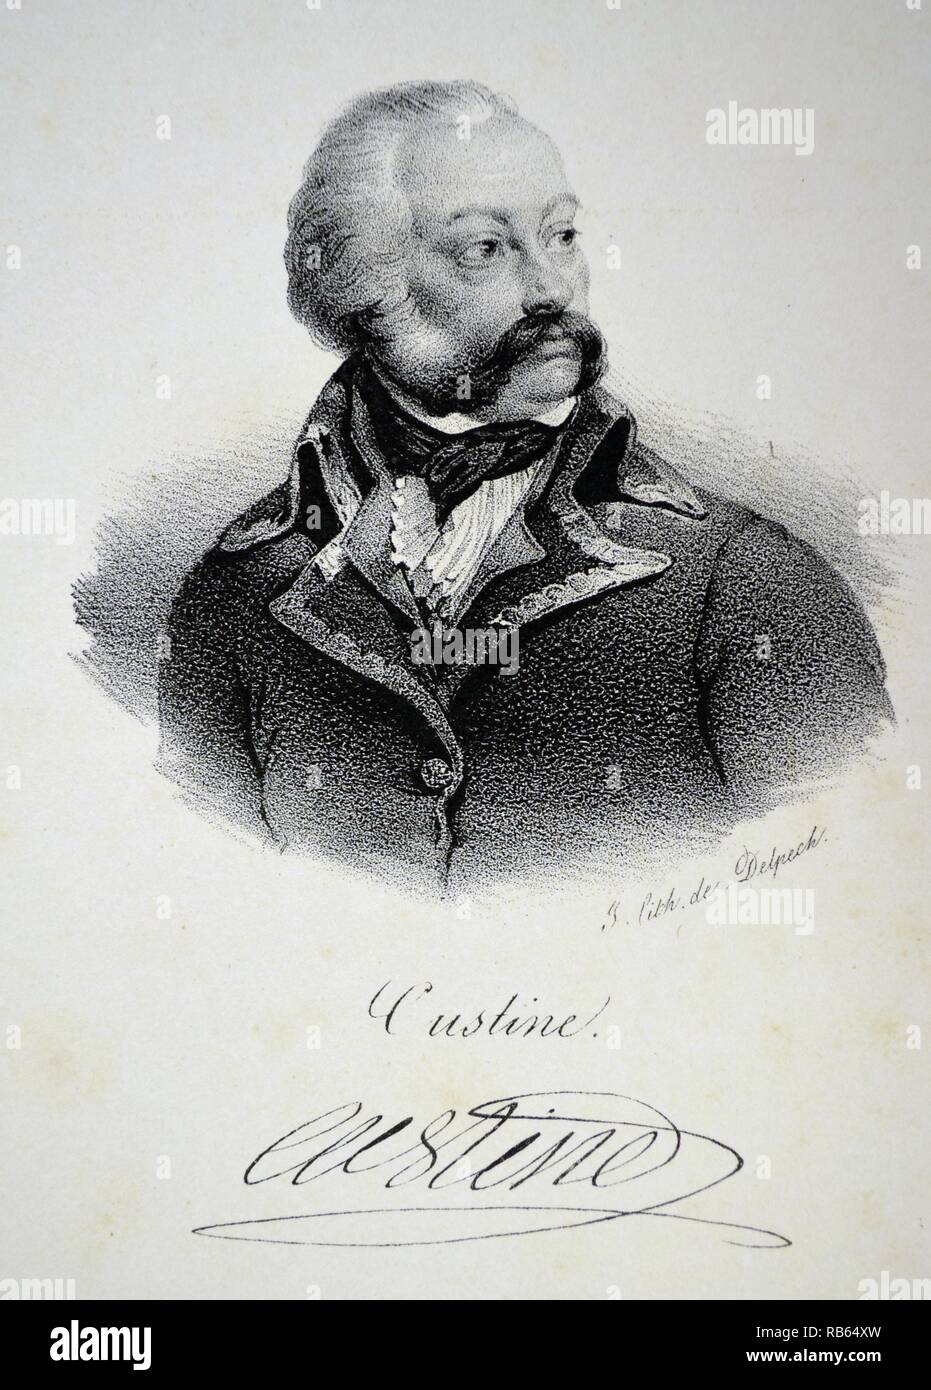 Adam Philippe, Comte de Custine (1740-1793, général français. Guillotiné en août 1793 pendant la Révolution française. Lithographie, Paris, c1840. Banque D'Images